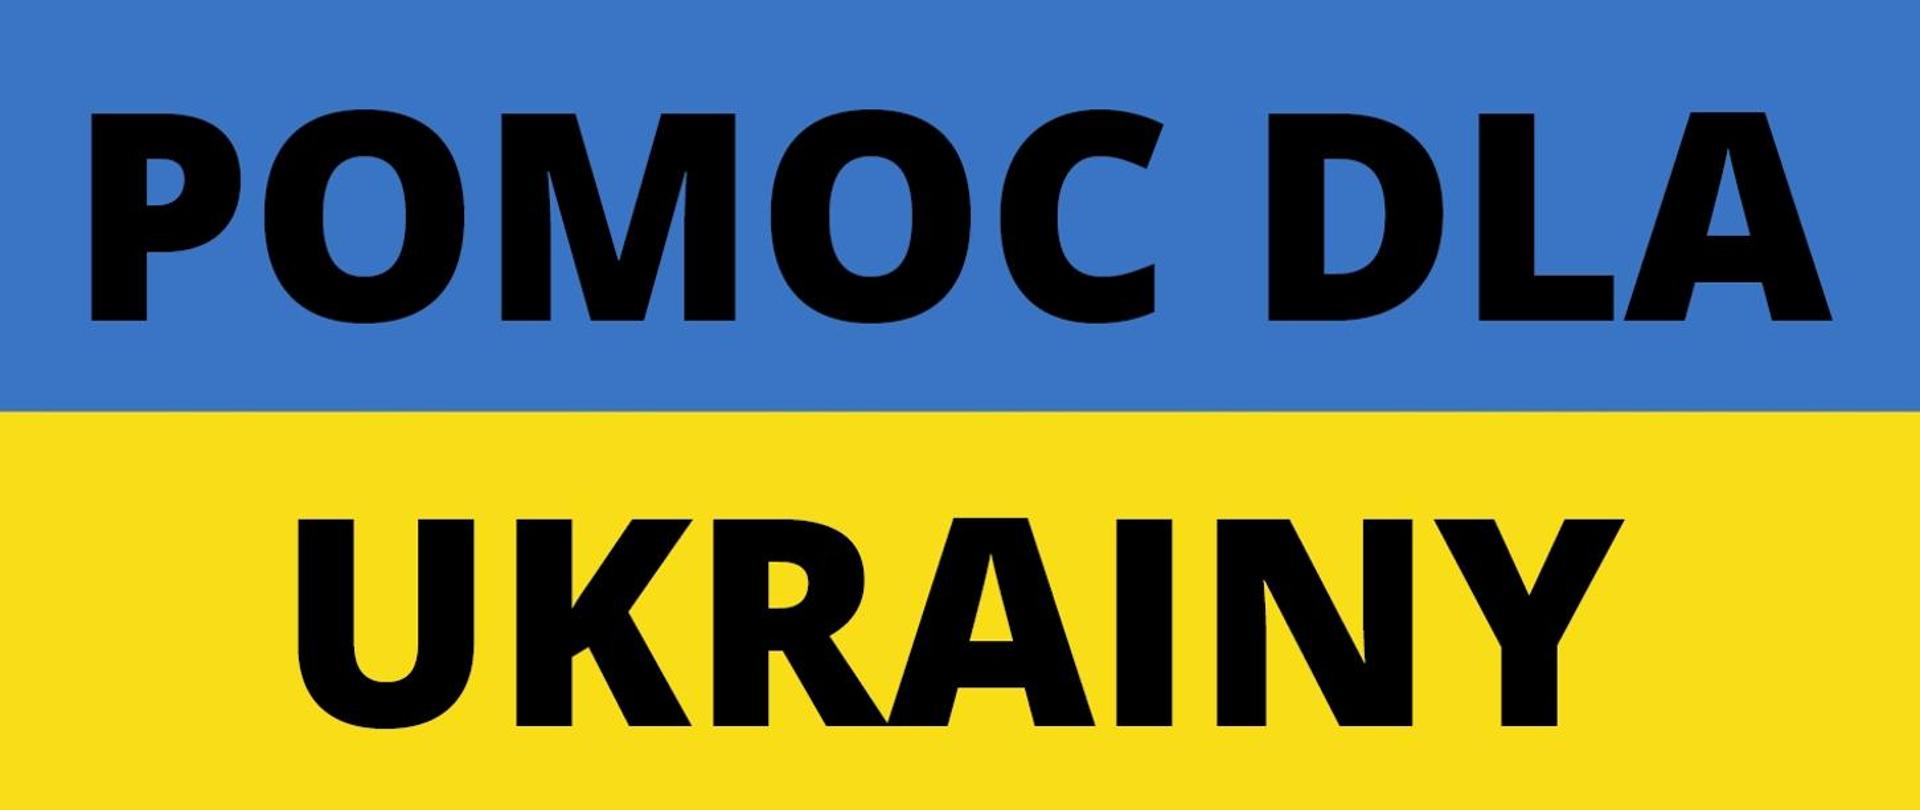 Na niebieskim pasu u góry czarny napis pomoc dla . Na żółtym pasku na dole napis Ukrainy.